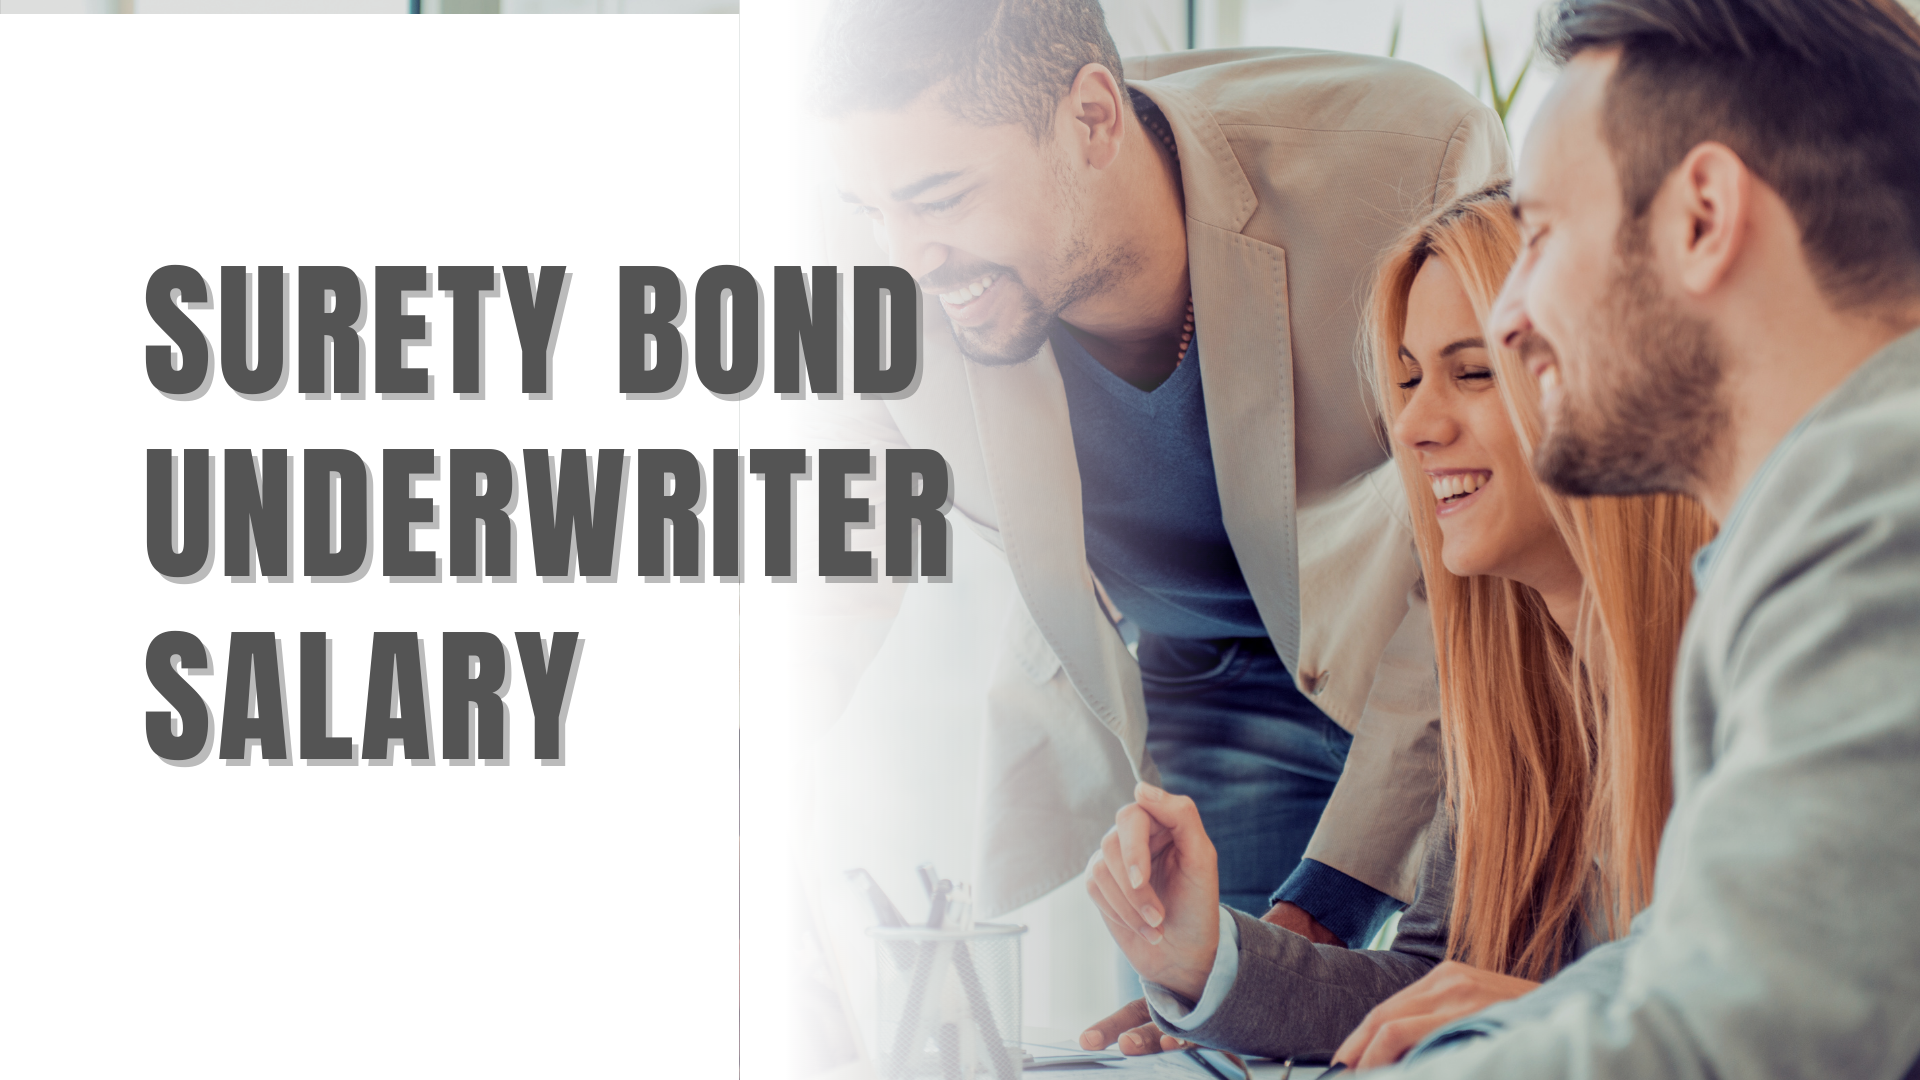 Surety Bond-Surety Bond Underwriter Salary